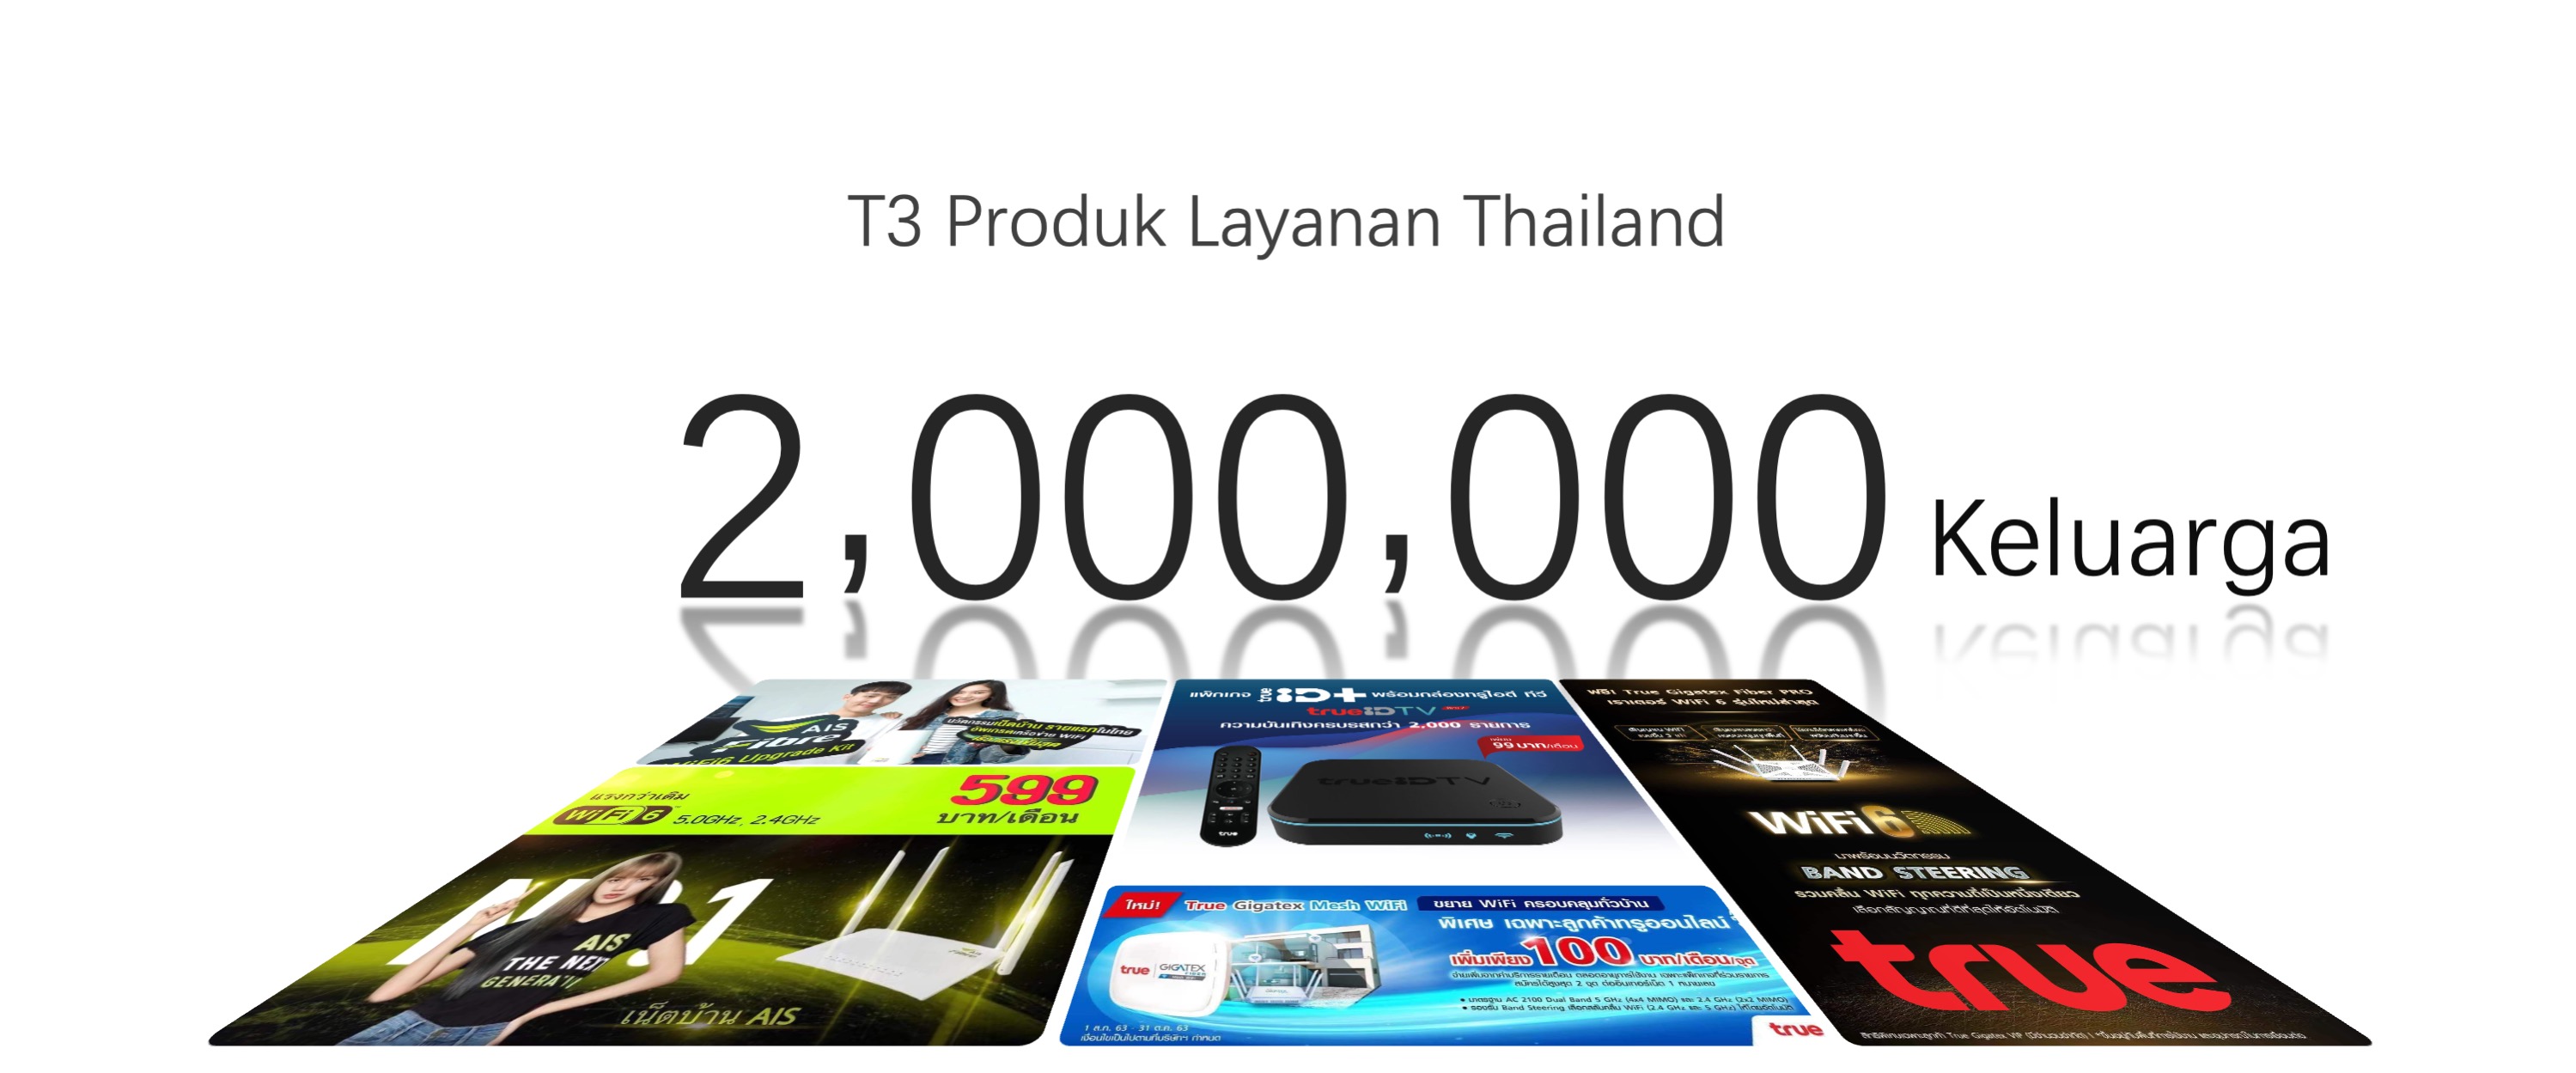 T3 Produk Layanan Thailand 1 million Keluarga